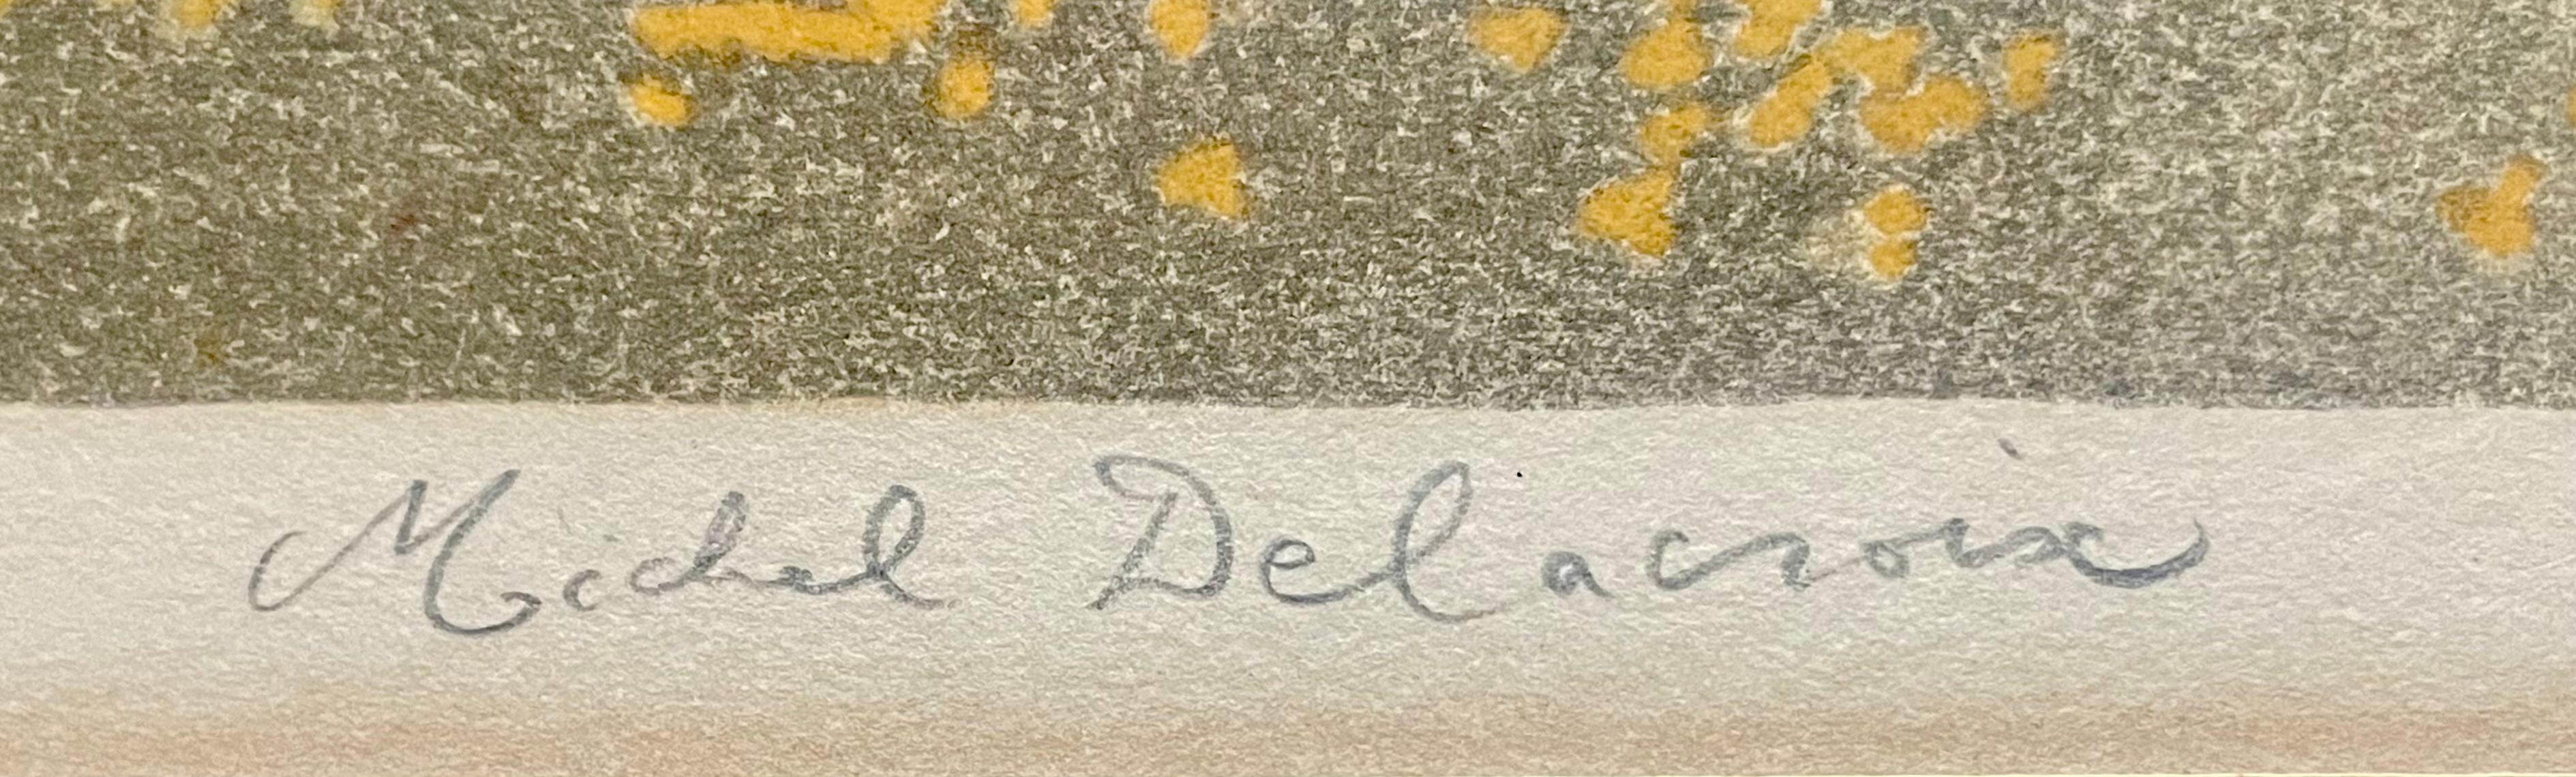 delacroix signature